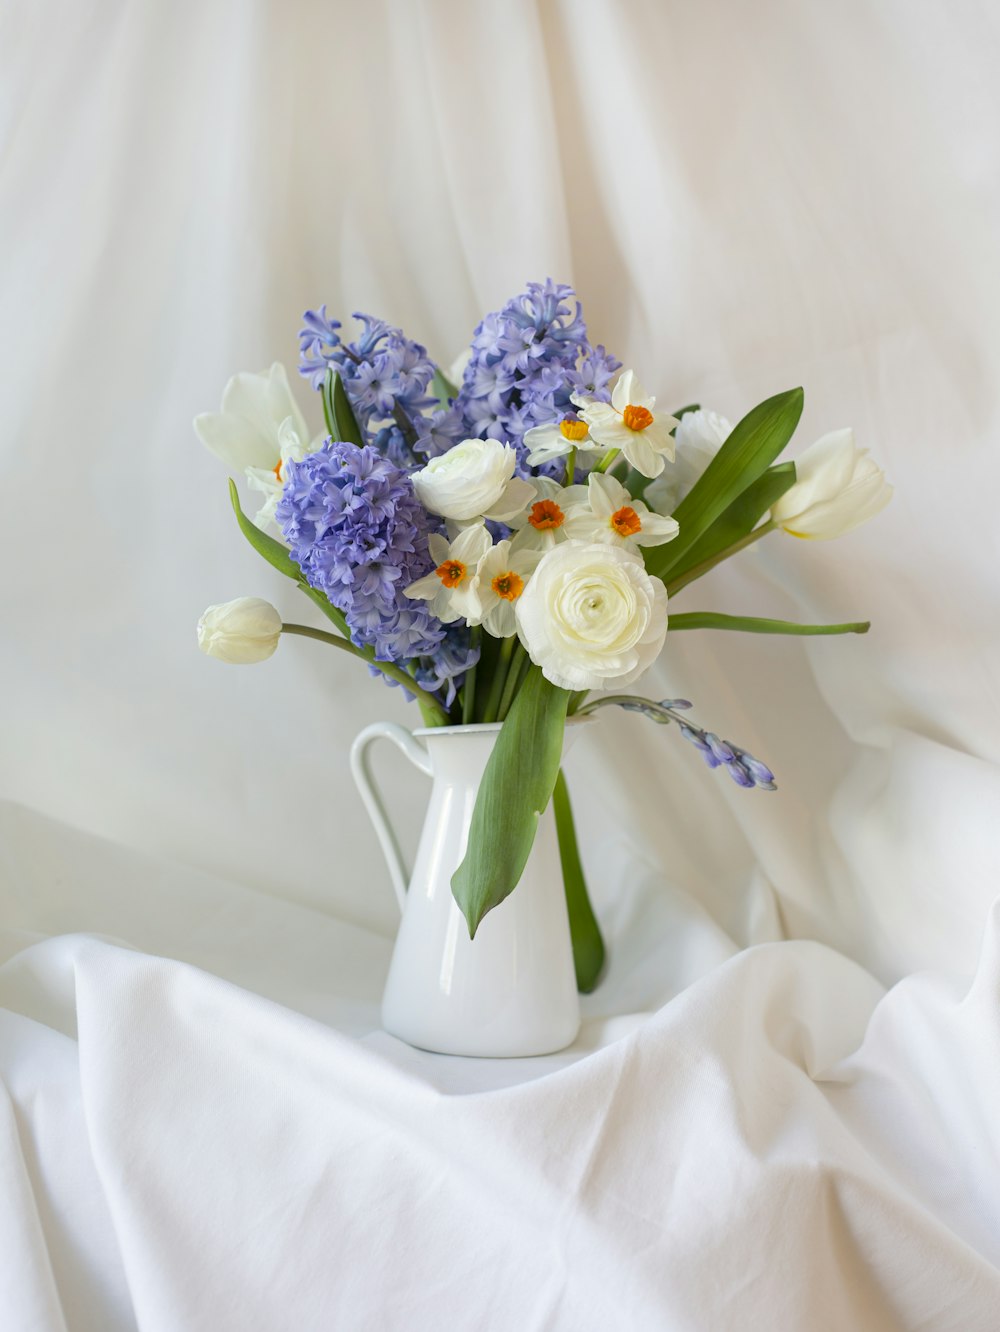 Bouquet de fleurs blanches et violettes dans un vase en céramique blanche